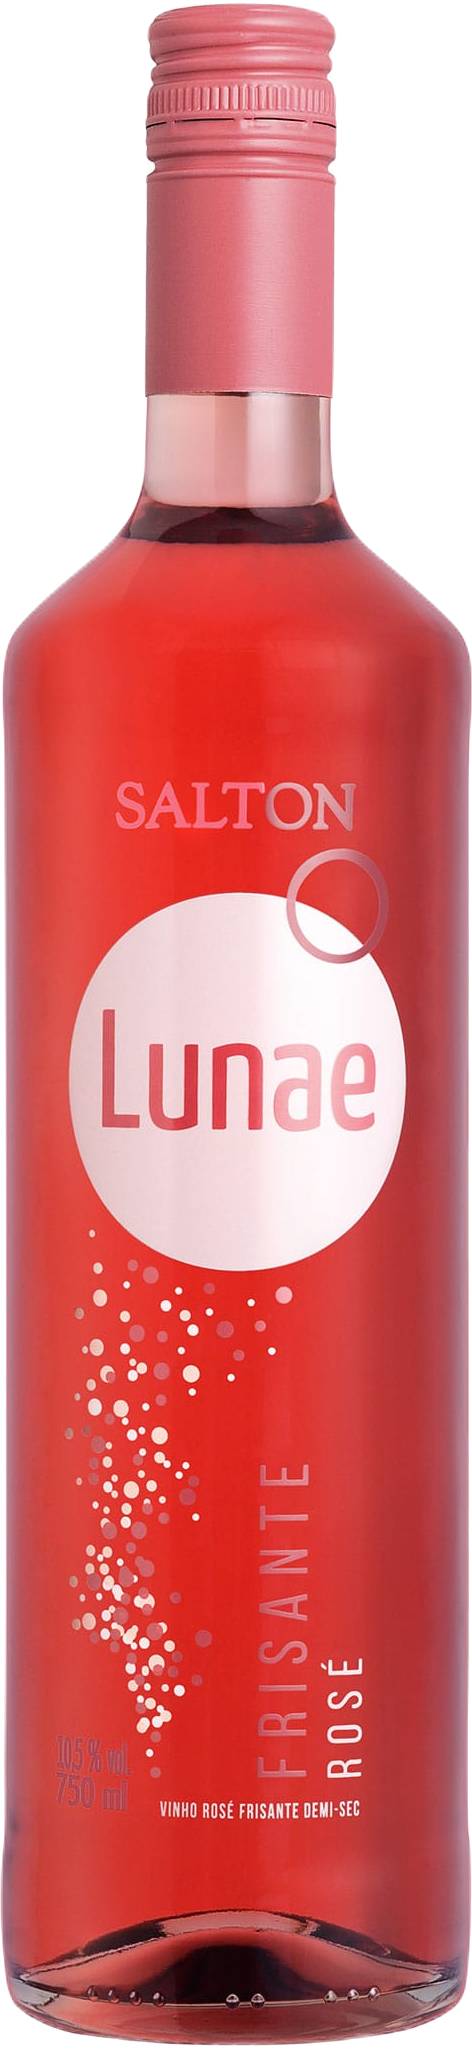 Salton vinho nacional frisante gaseificado lunae rosé demi-sec (750 ml)